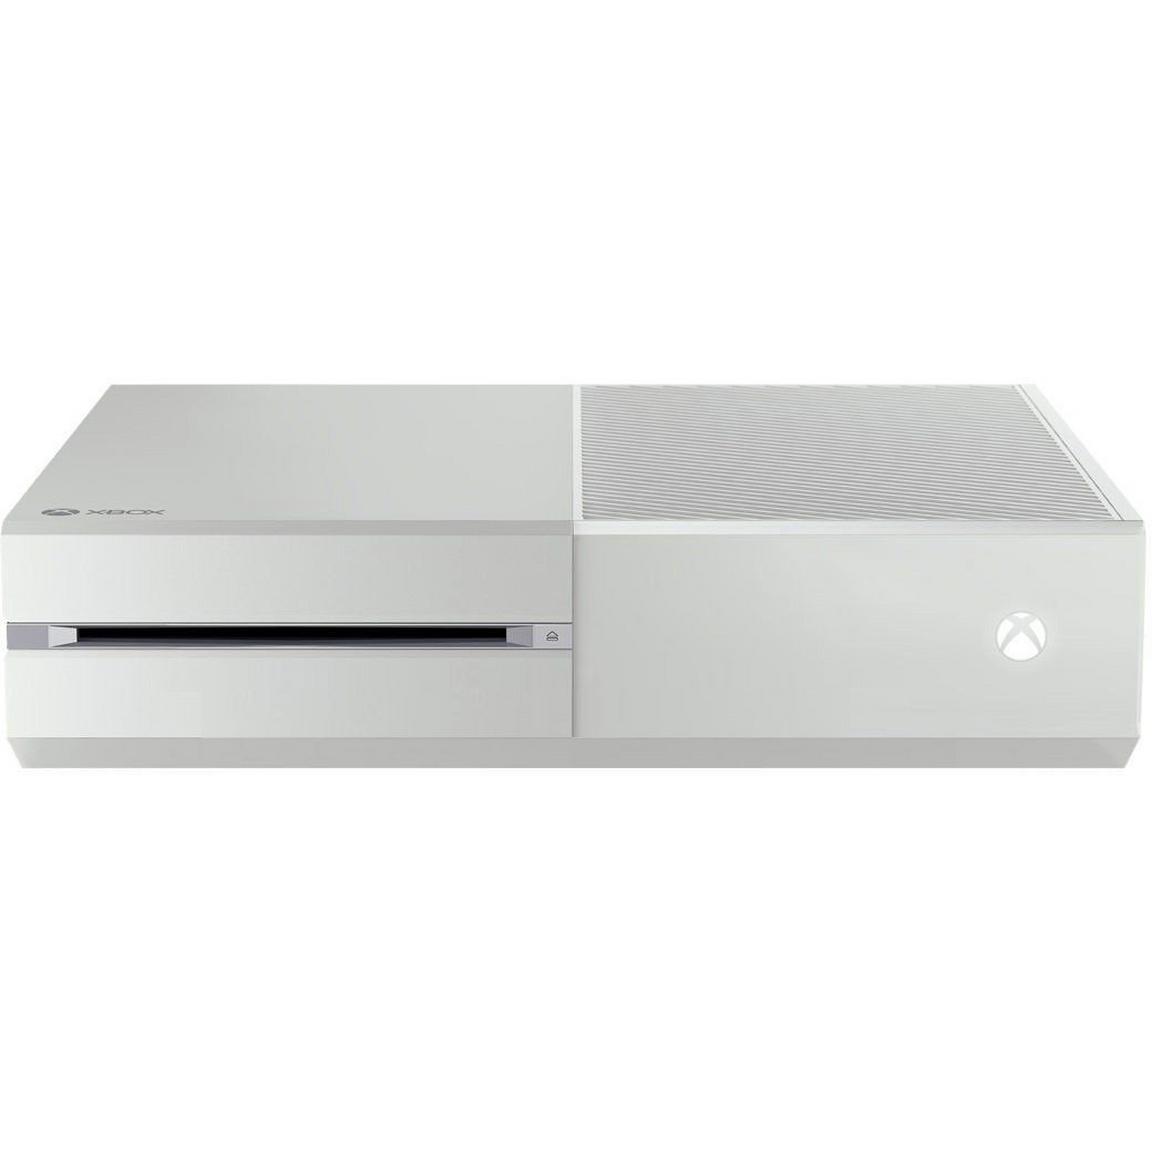 Microsoft Xbox One Console 500GB - White -  6QZ-00026